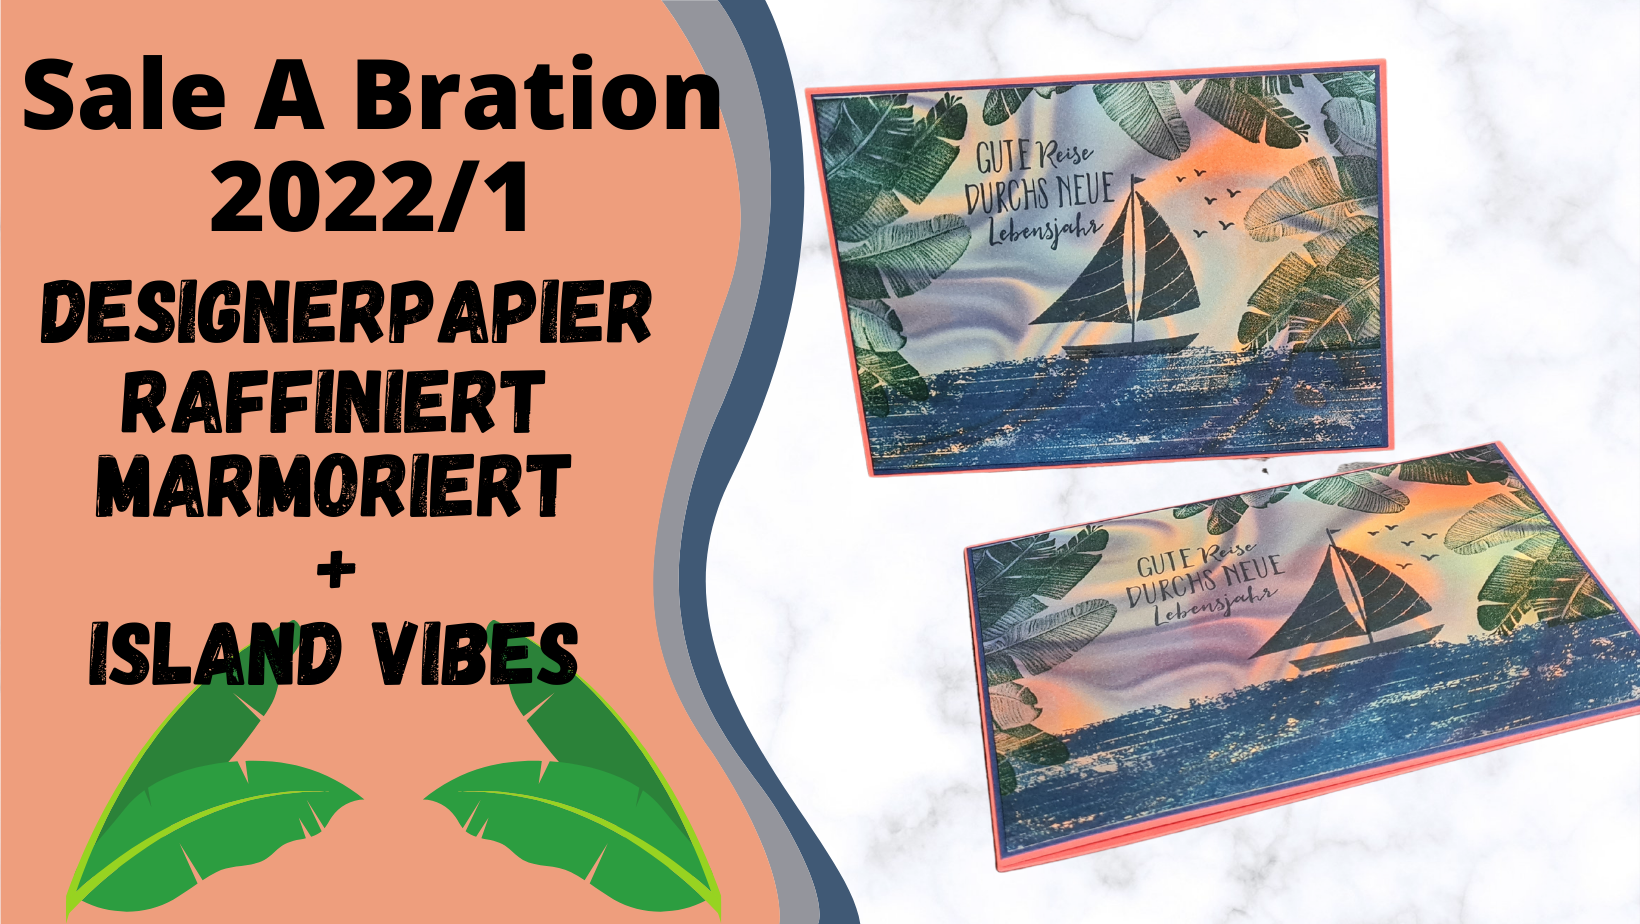 Sale-A-Bration Ideen 2022/1